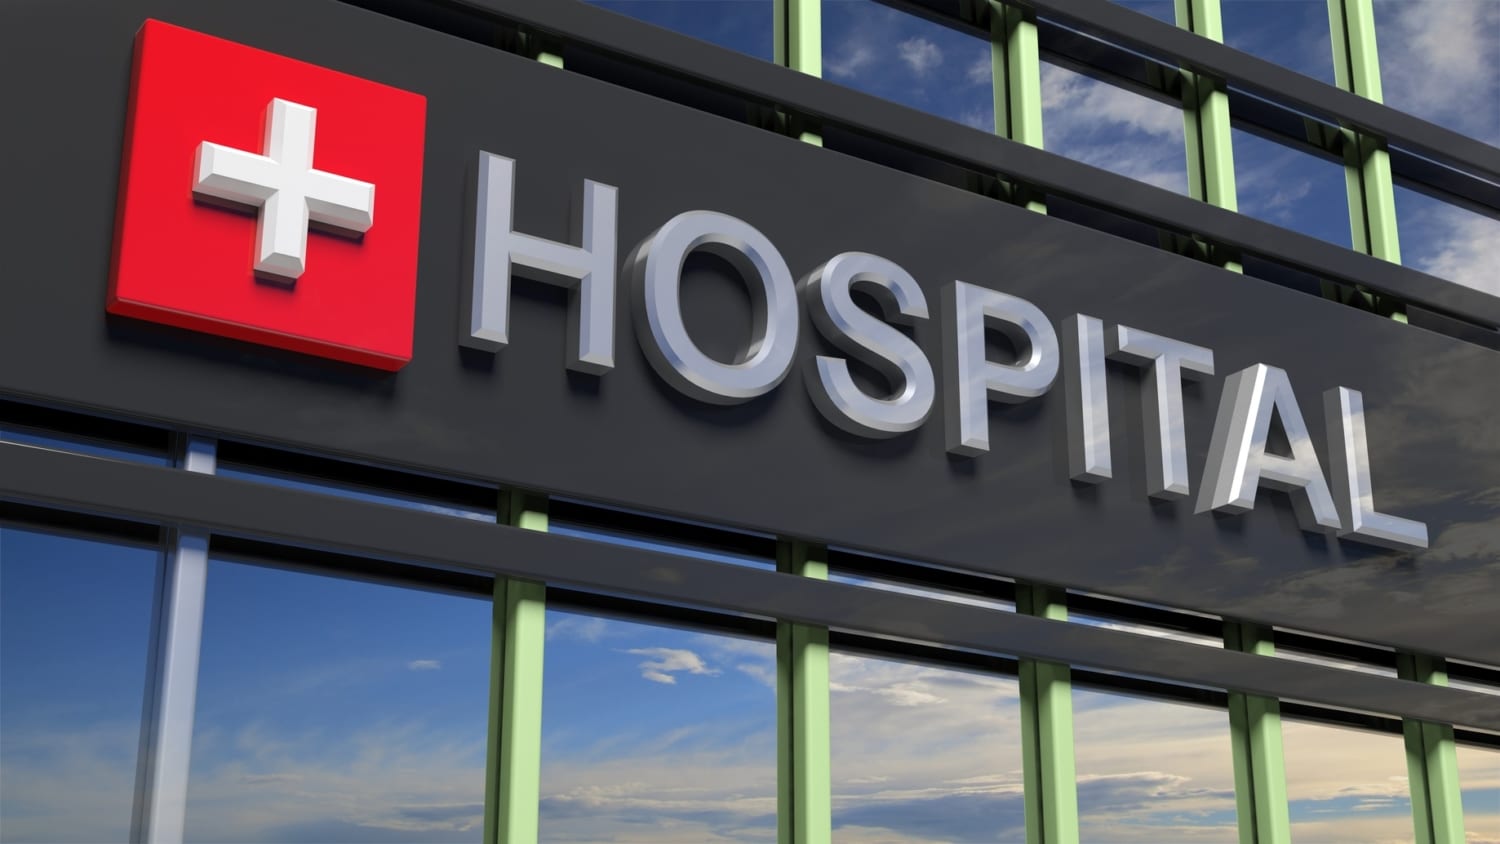 how to choose a hospital